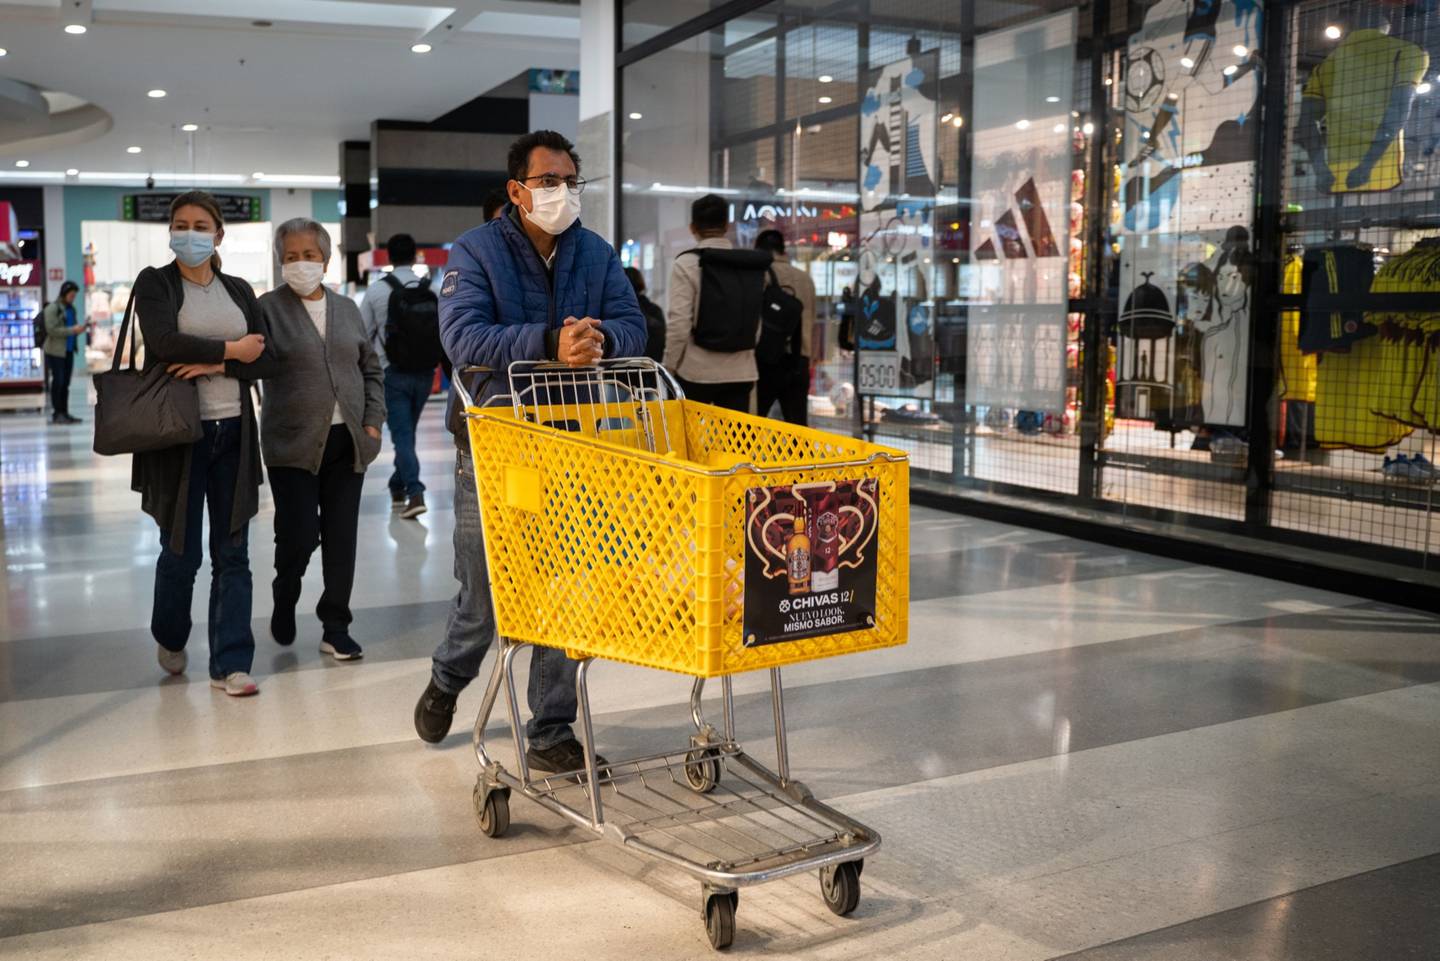 Compradores caminan por un centro comercial en Bogotá, Colombia, el jueves 28 de julio de 2022.dfd